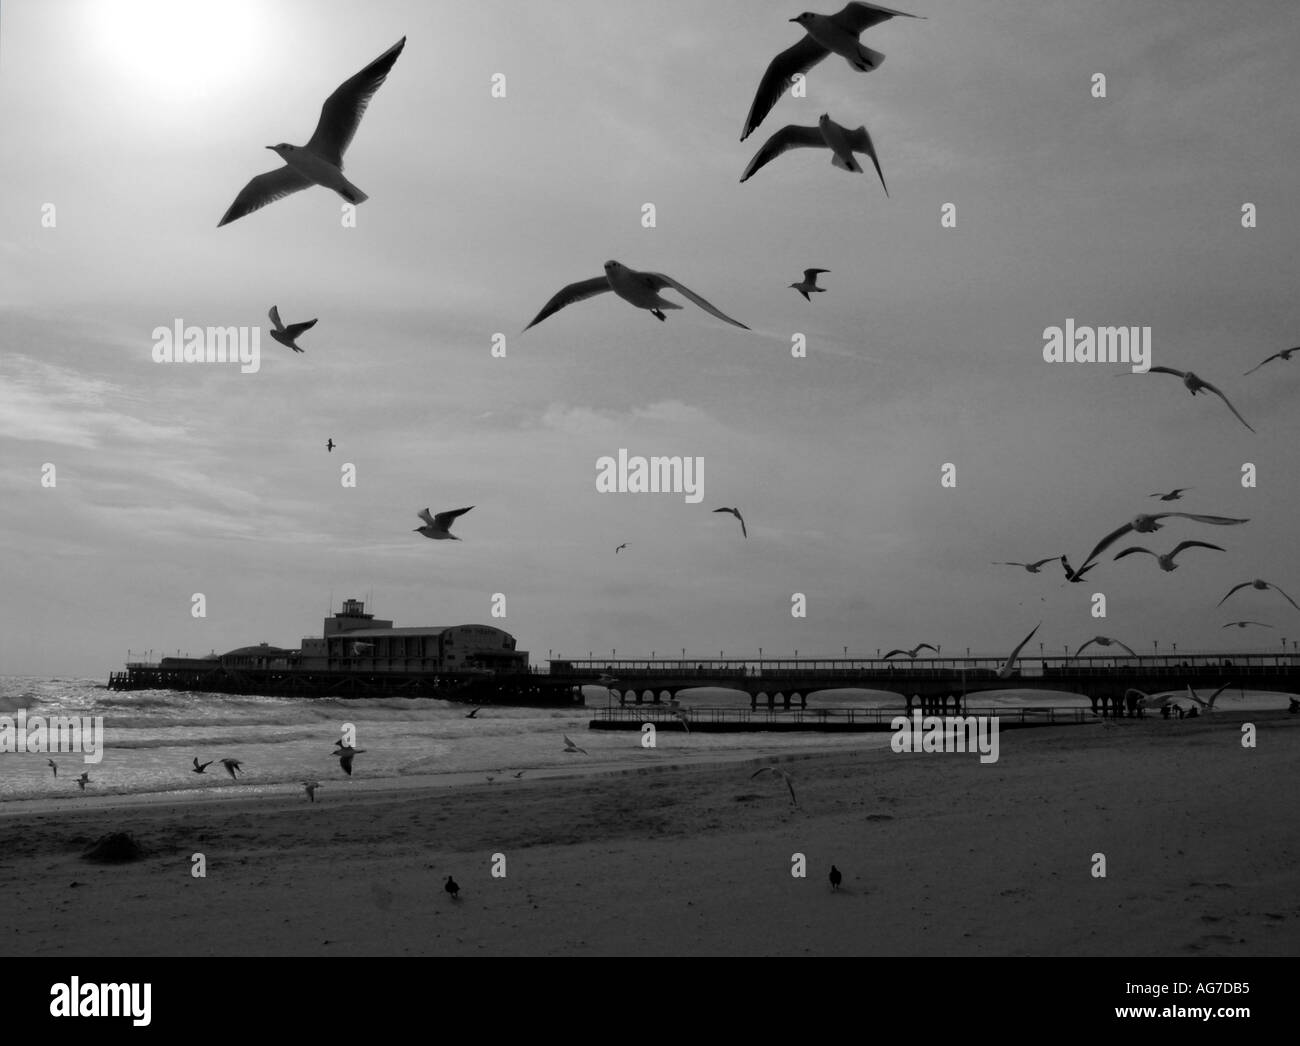 Möwen am Strand und Bournemouth Pier in schwarz / weiß England Großbritannien Vereinigtes Königreich UK Stockfoto